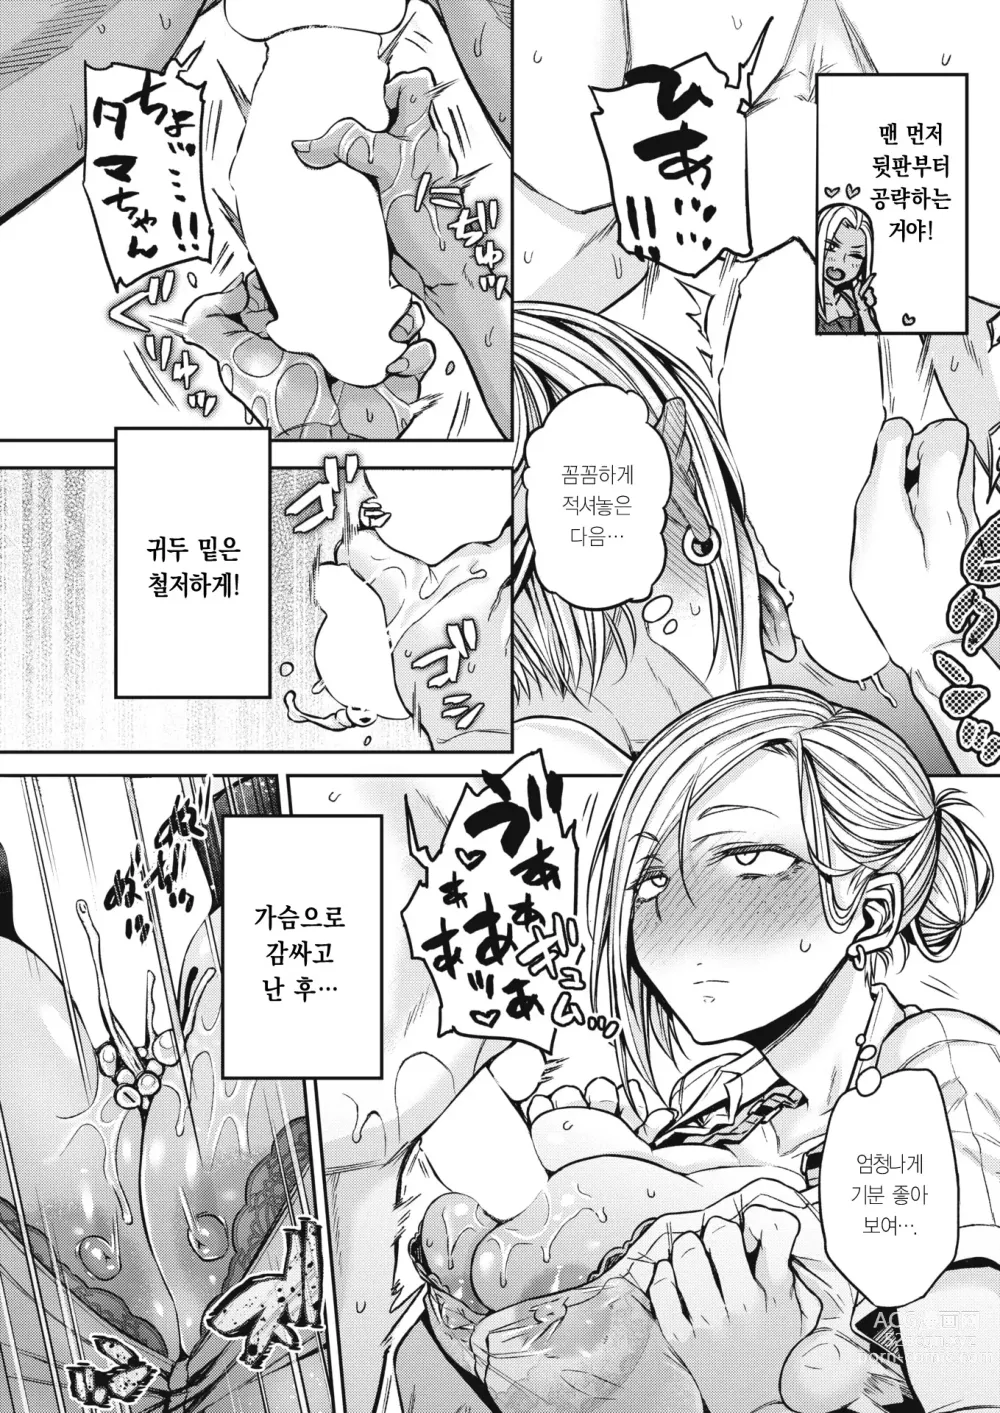 Page 9 of manga 마코는 정말로 요망해